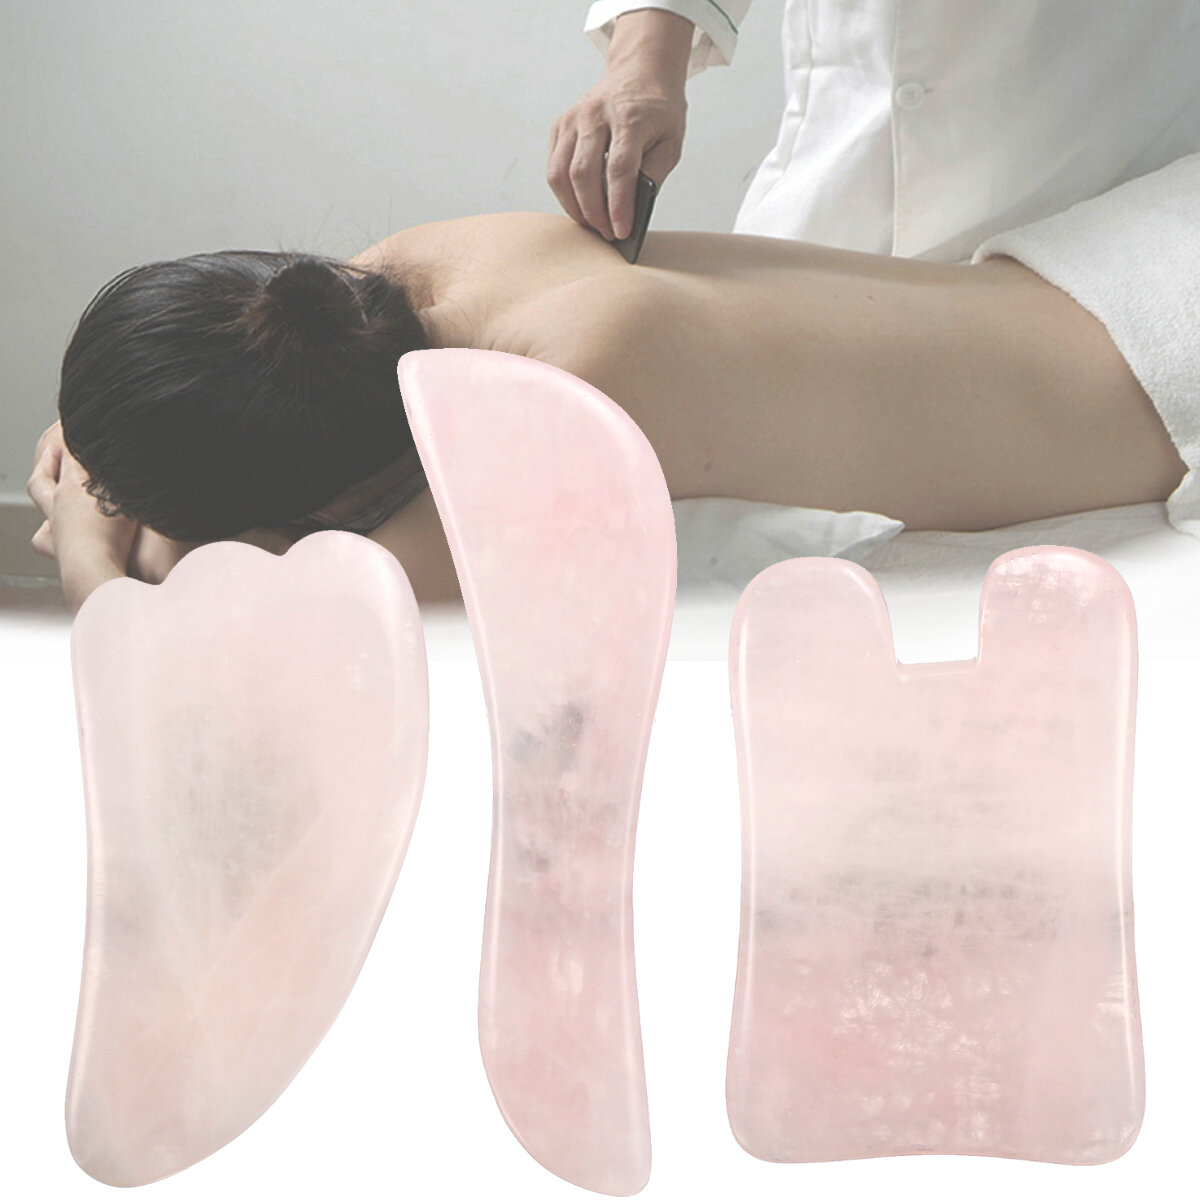 3 Stk. Natürlicher Jadestein Gua Sha Manuelles Massagegerät Health Beauty Facial Massage Board